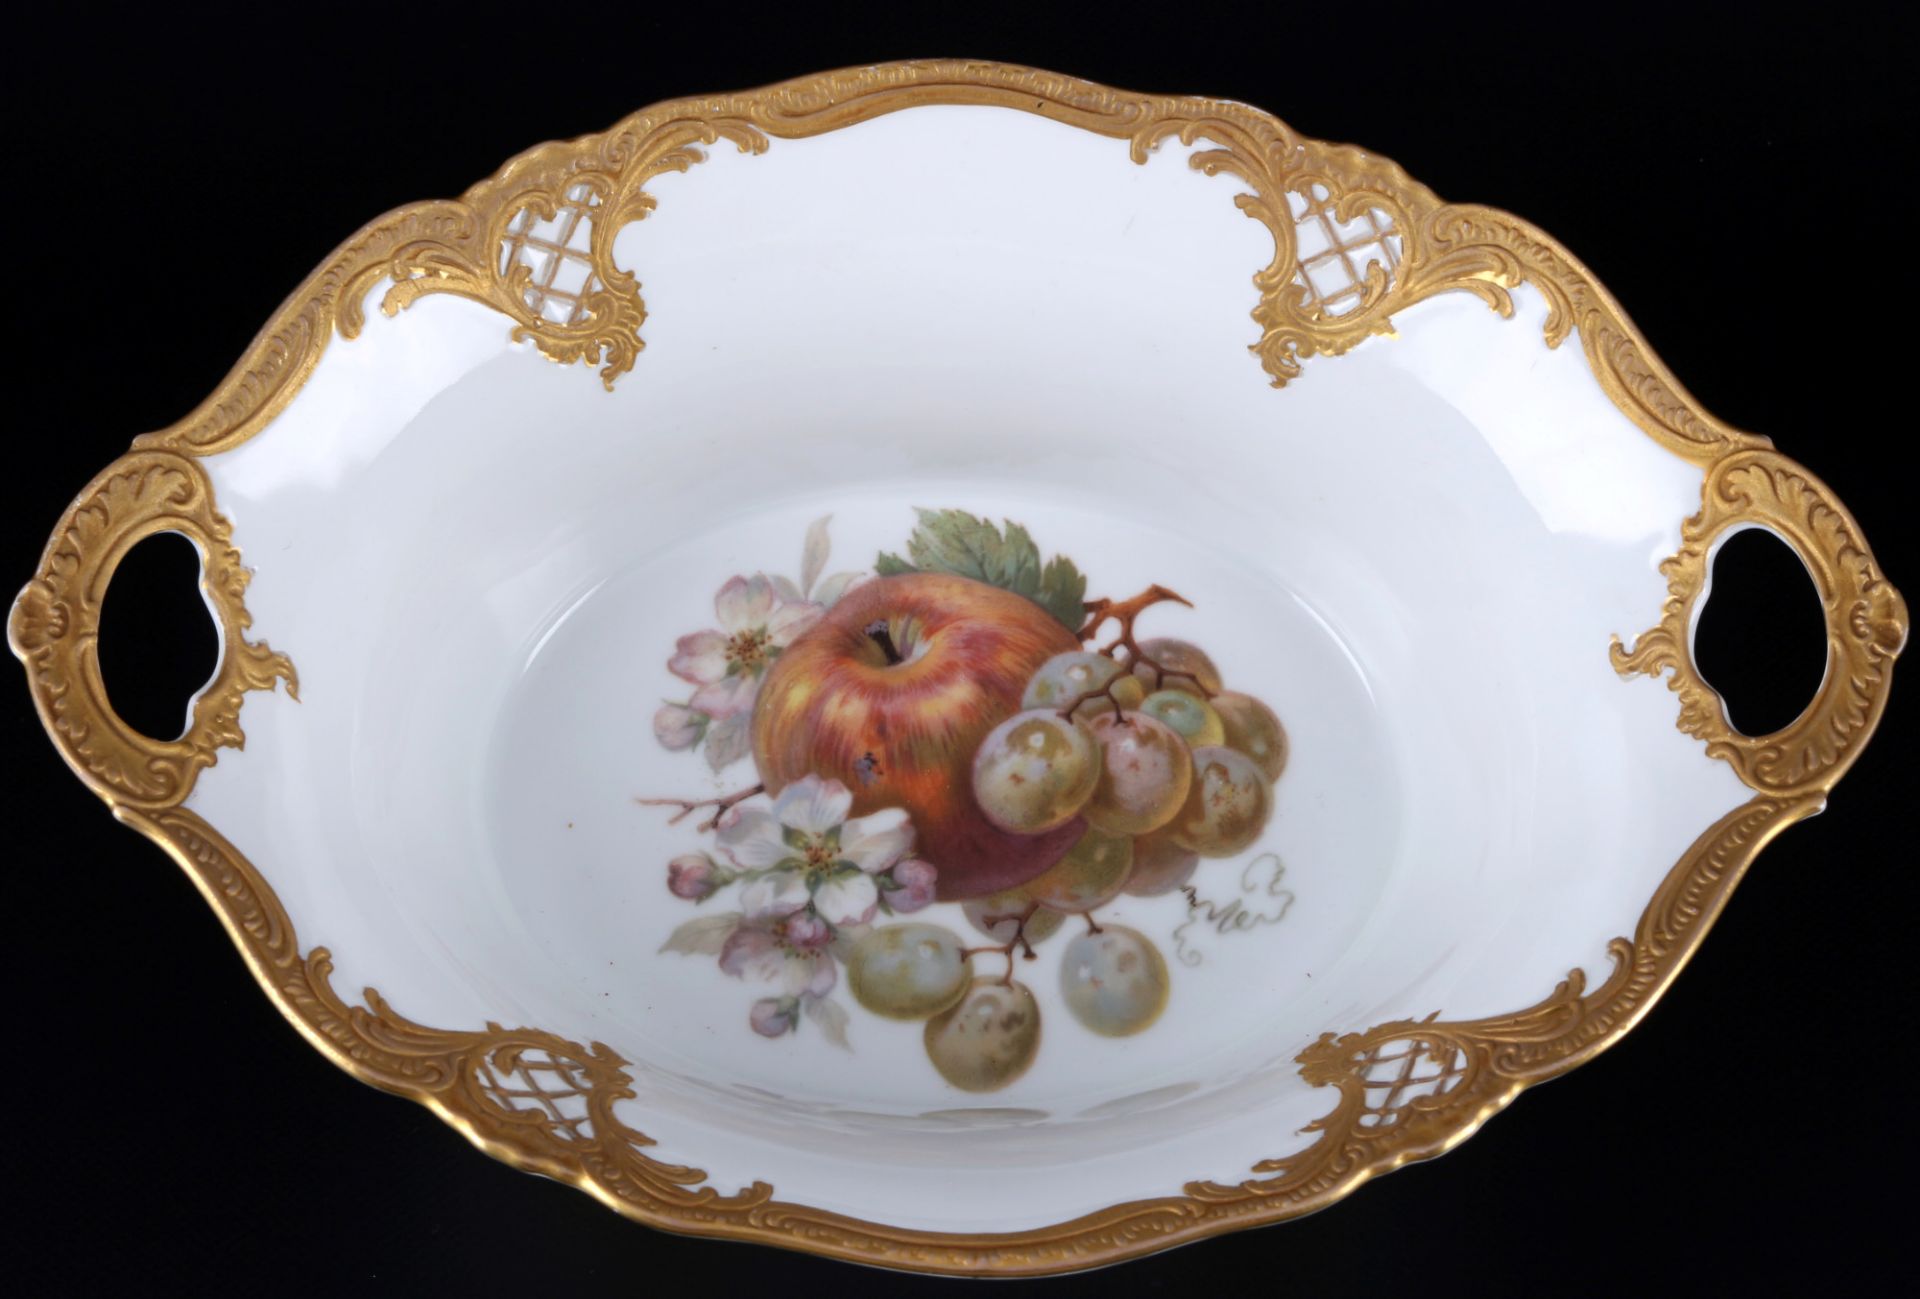 Fürstenberg Fruits splendor bowl and plate, Obstmalerei Prunkschale und Teller, - Image 2 of 5